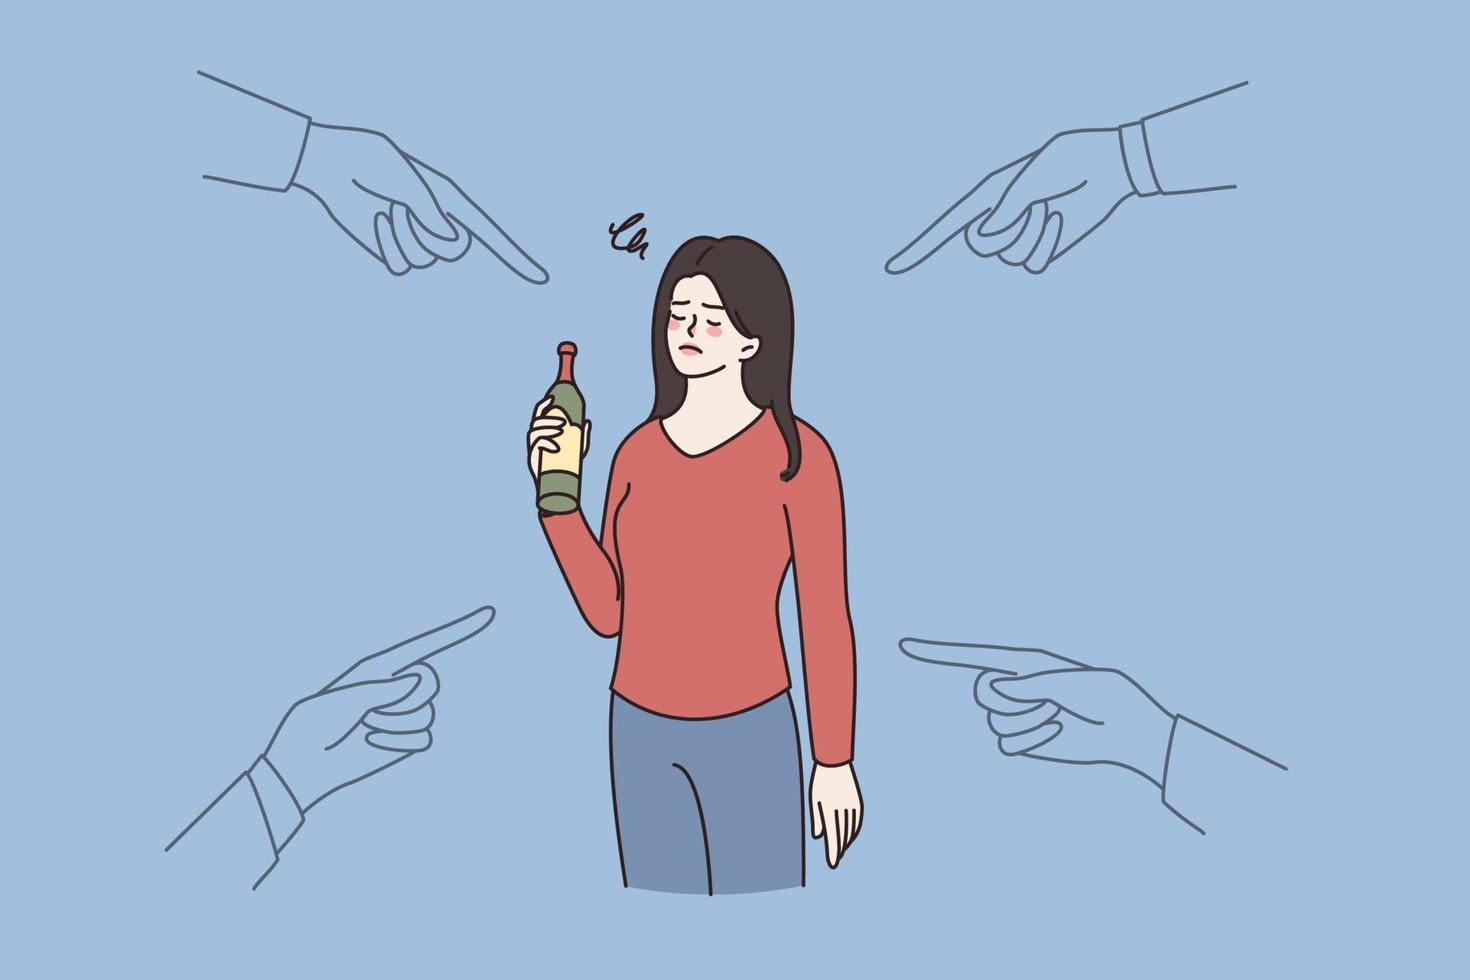 mensen punt Bij dronken vrouw Holding fles in hand. maatschappij beschuldigen vrouw met alcoholisch verslaving probleem. alcohol verslaafde, slecht ongezond gewoonte. vlak vector illustratie, tekenfilm karakter.